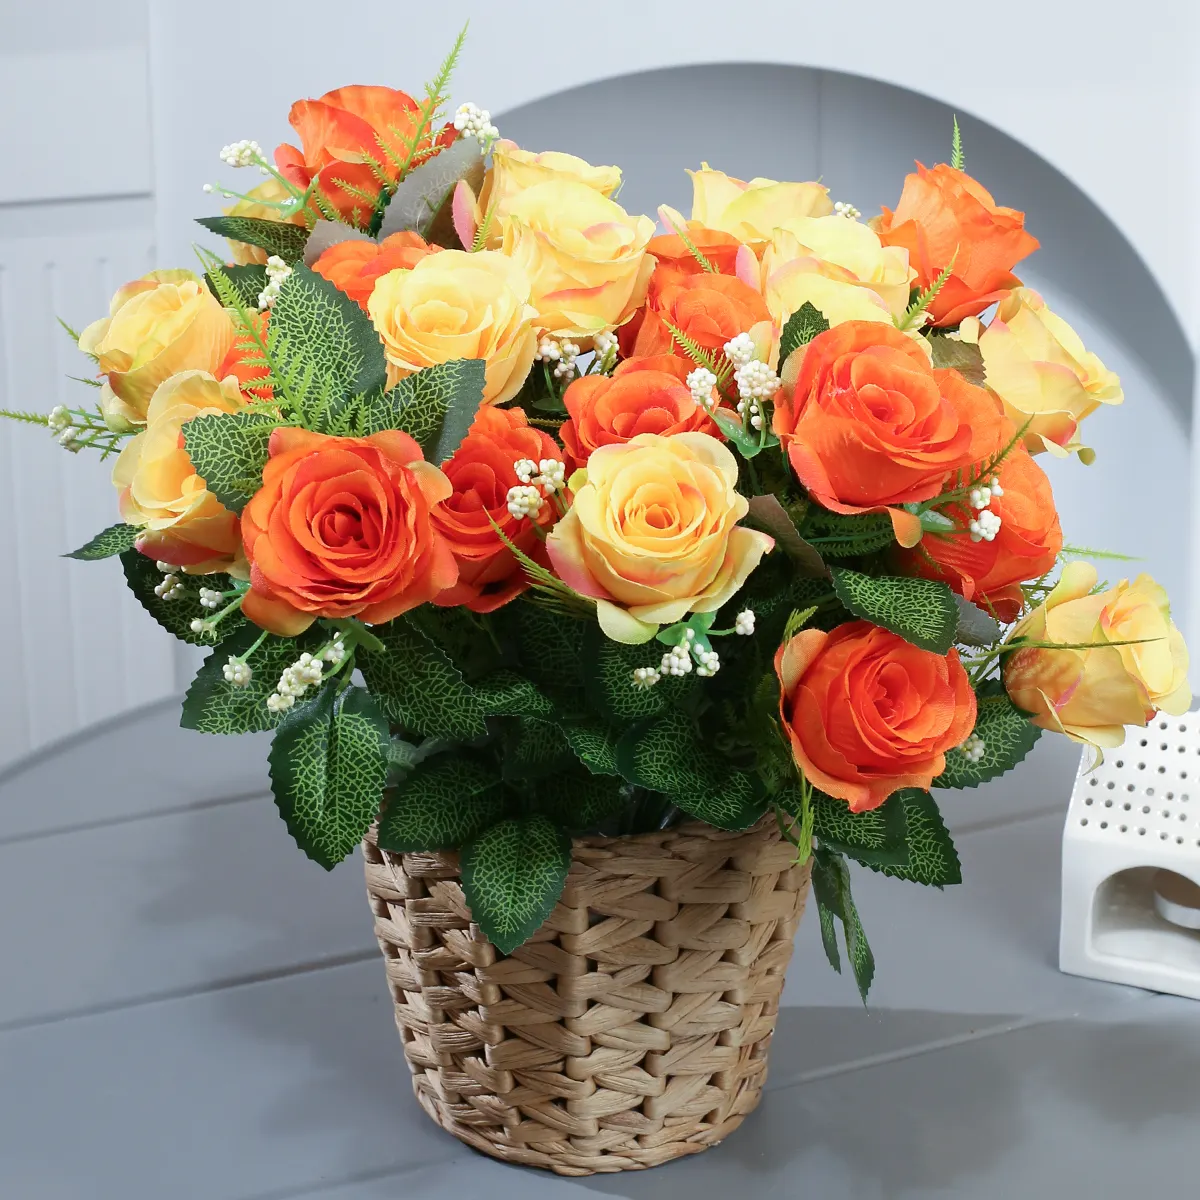 LY-71119 Haute Qualité Résistant Aux UV Faux Couleurs Mixtes Rose Floral En Plastique Fleur De Soie Artificielle pour La Maison De Mariage Décor De Fête